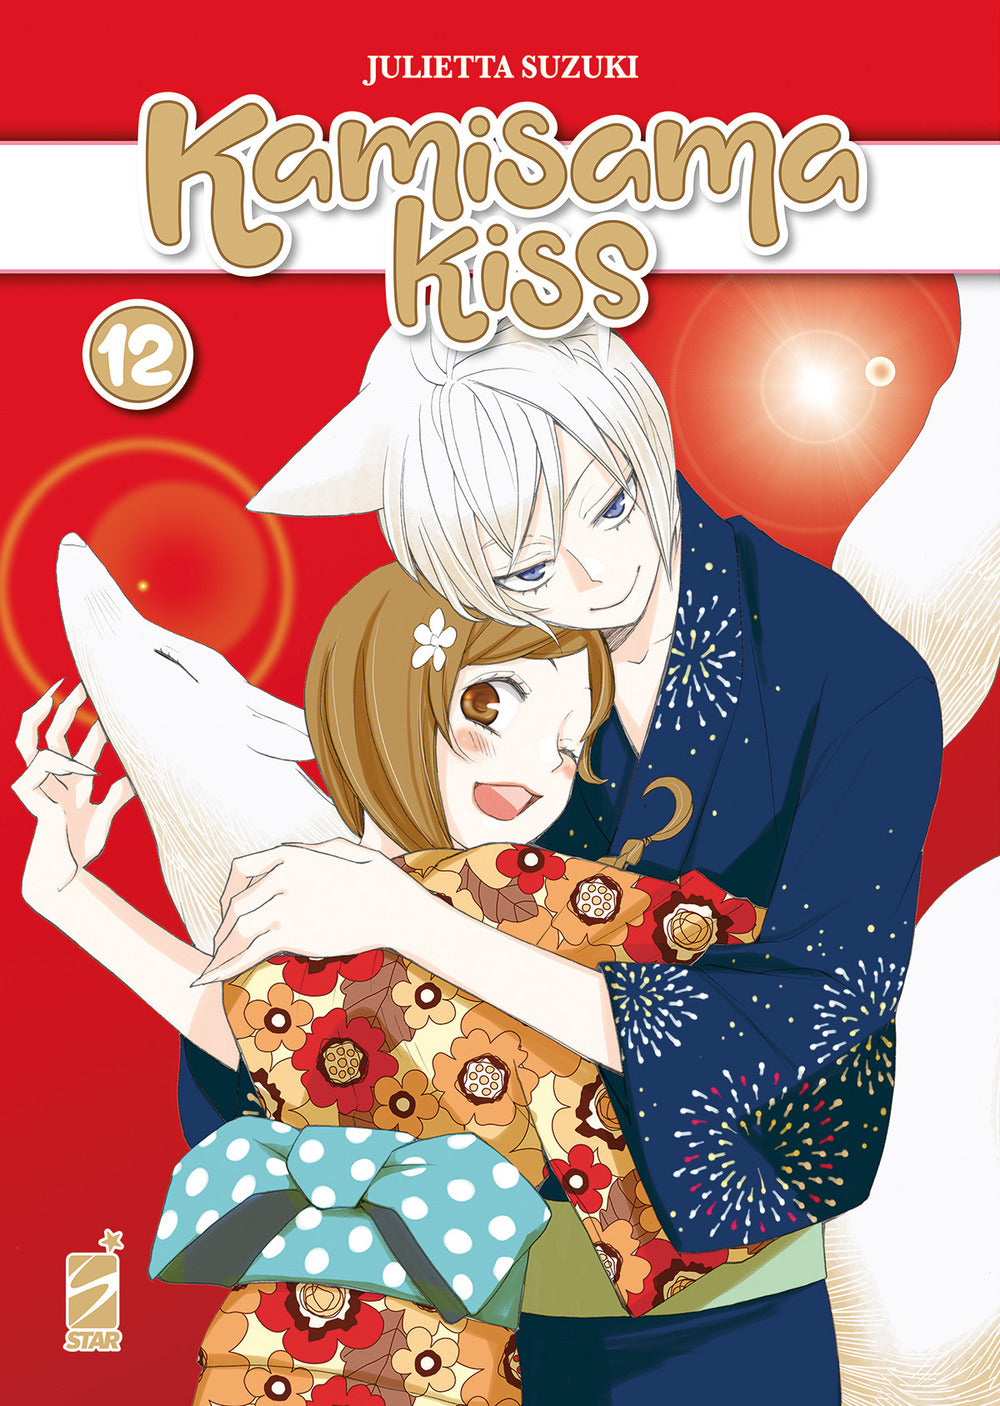 Kamisama kiss. New edition. Vol. 12